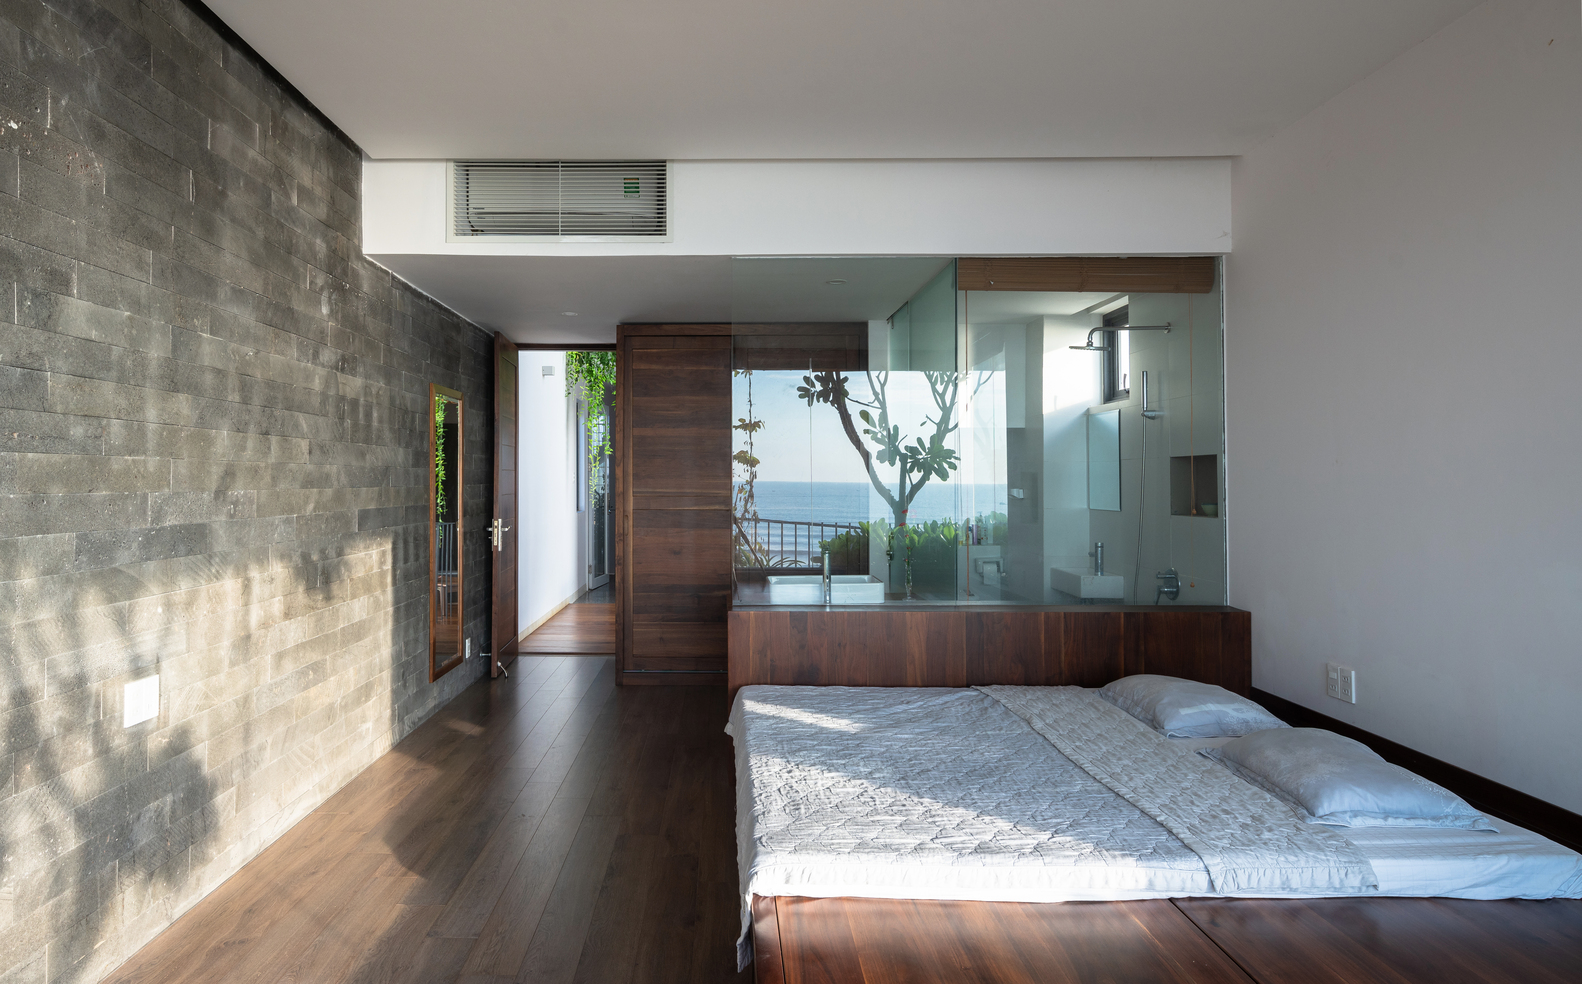 hình ảnh phòng ngủ rộng rãi, bài trí tối giản với nội thất gỗ, cửa kính trong suốt